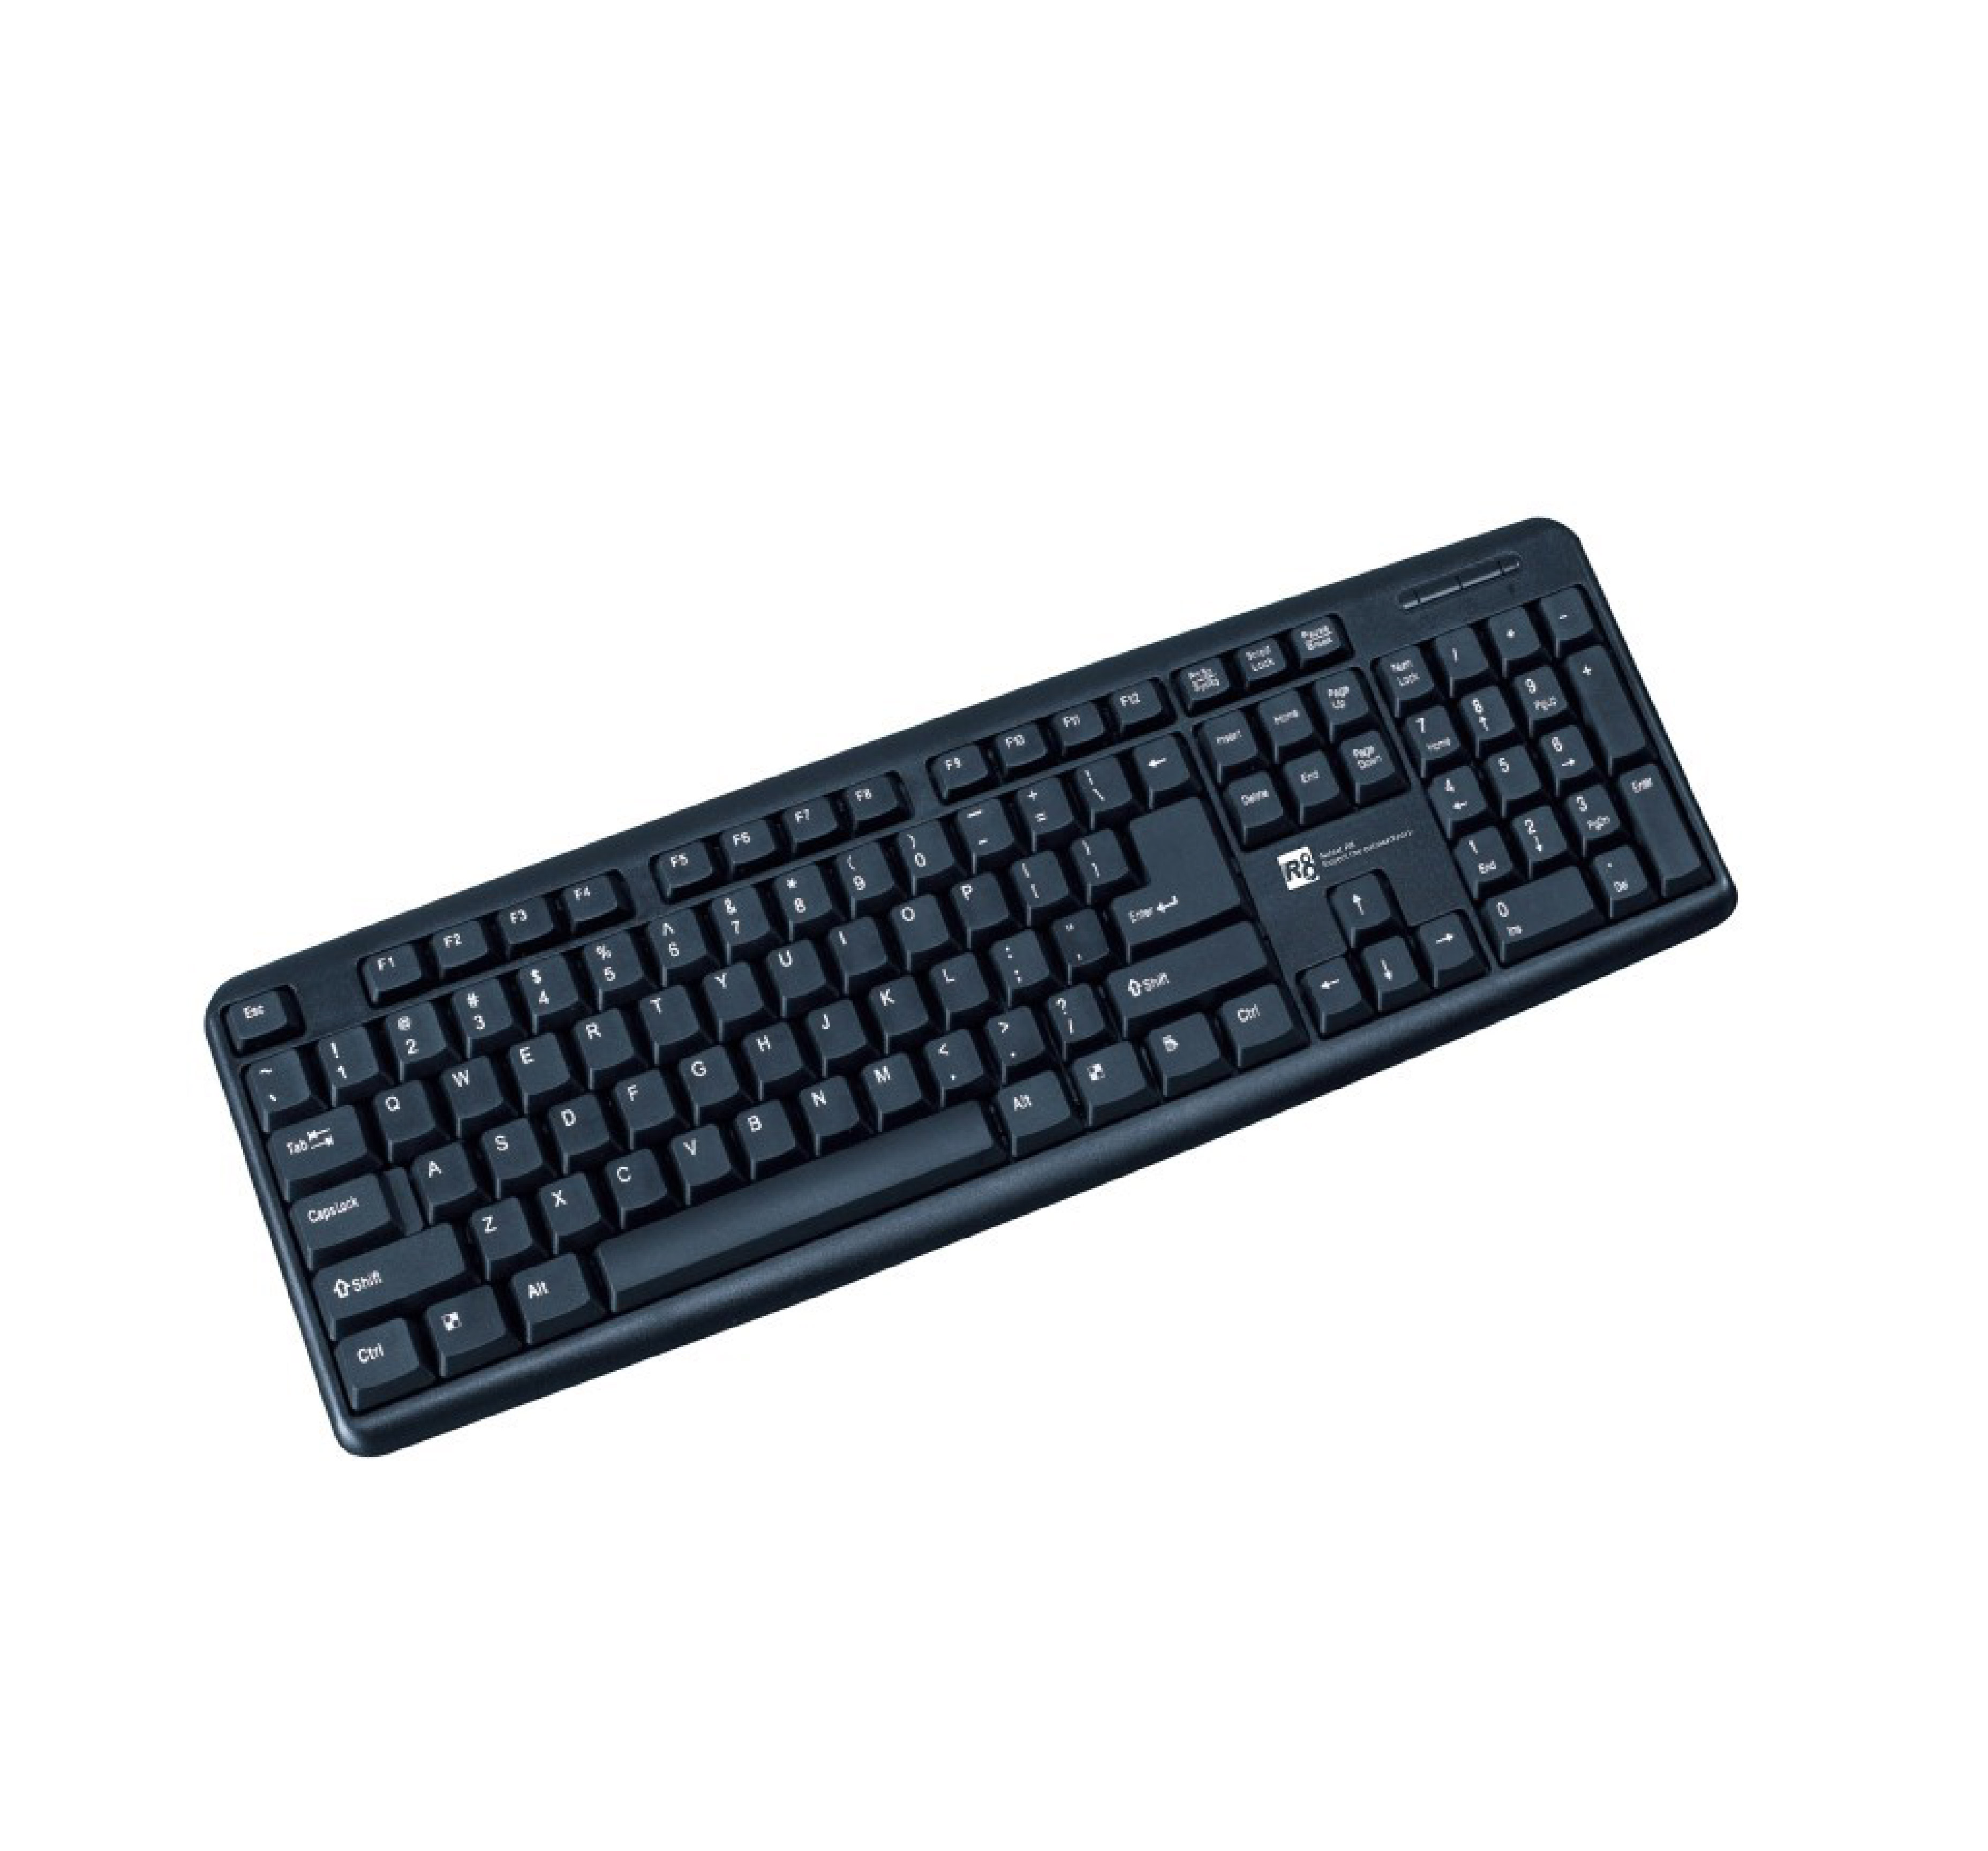 R8 1801 Keyboard